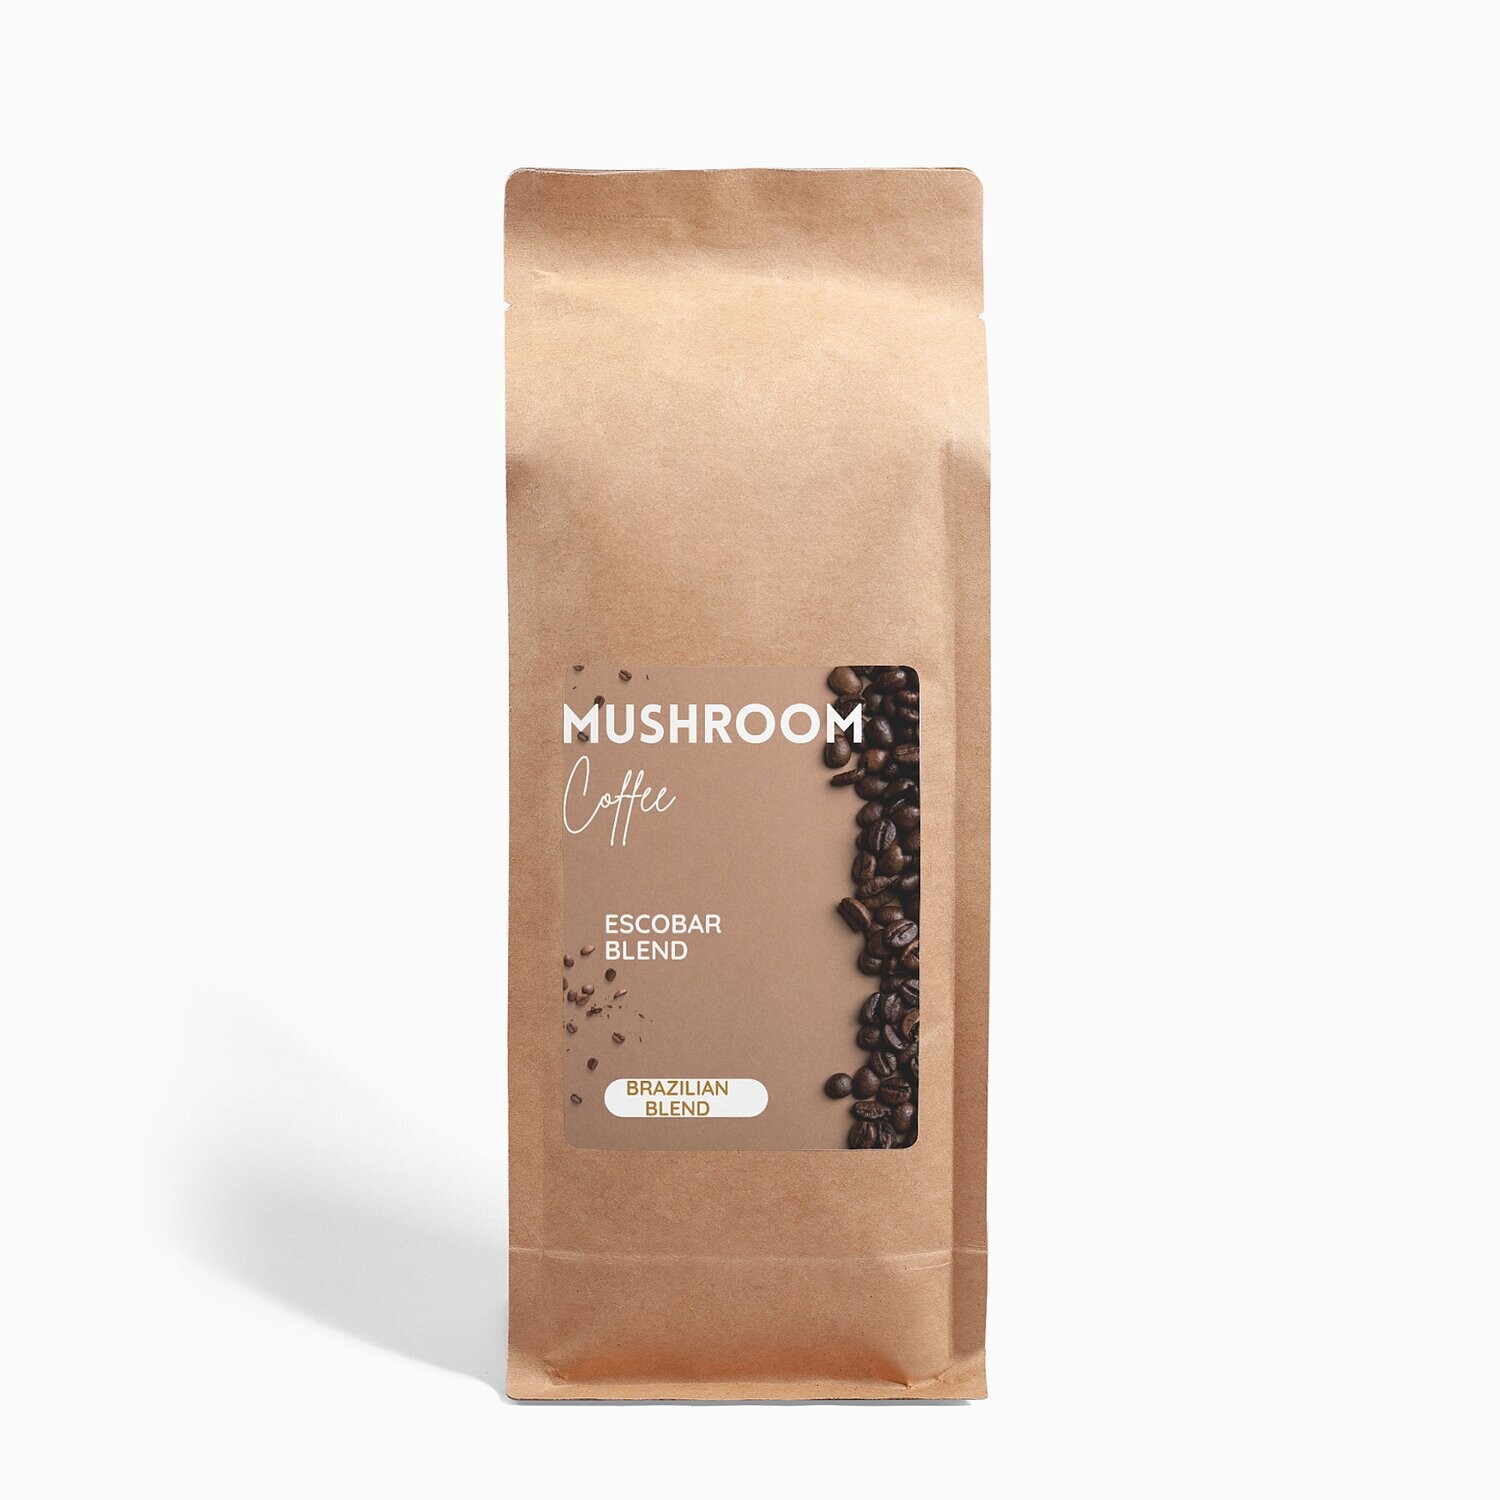 Mushroom Coffee Fusion - Lion’s Mane & Chaga 16oz